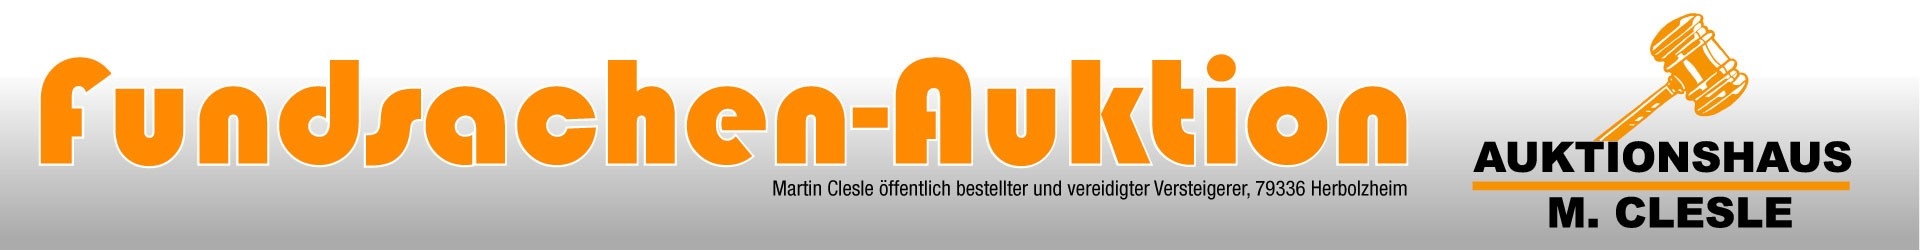 fundsachen-auktion.de